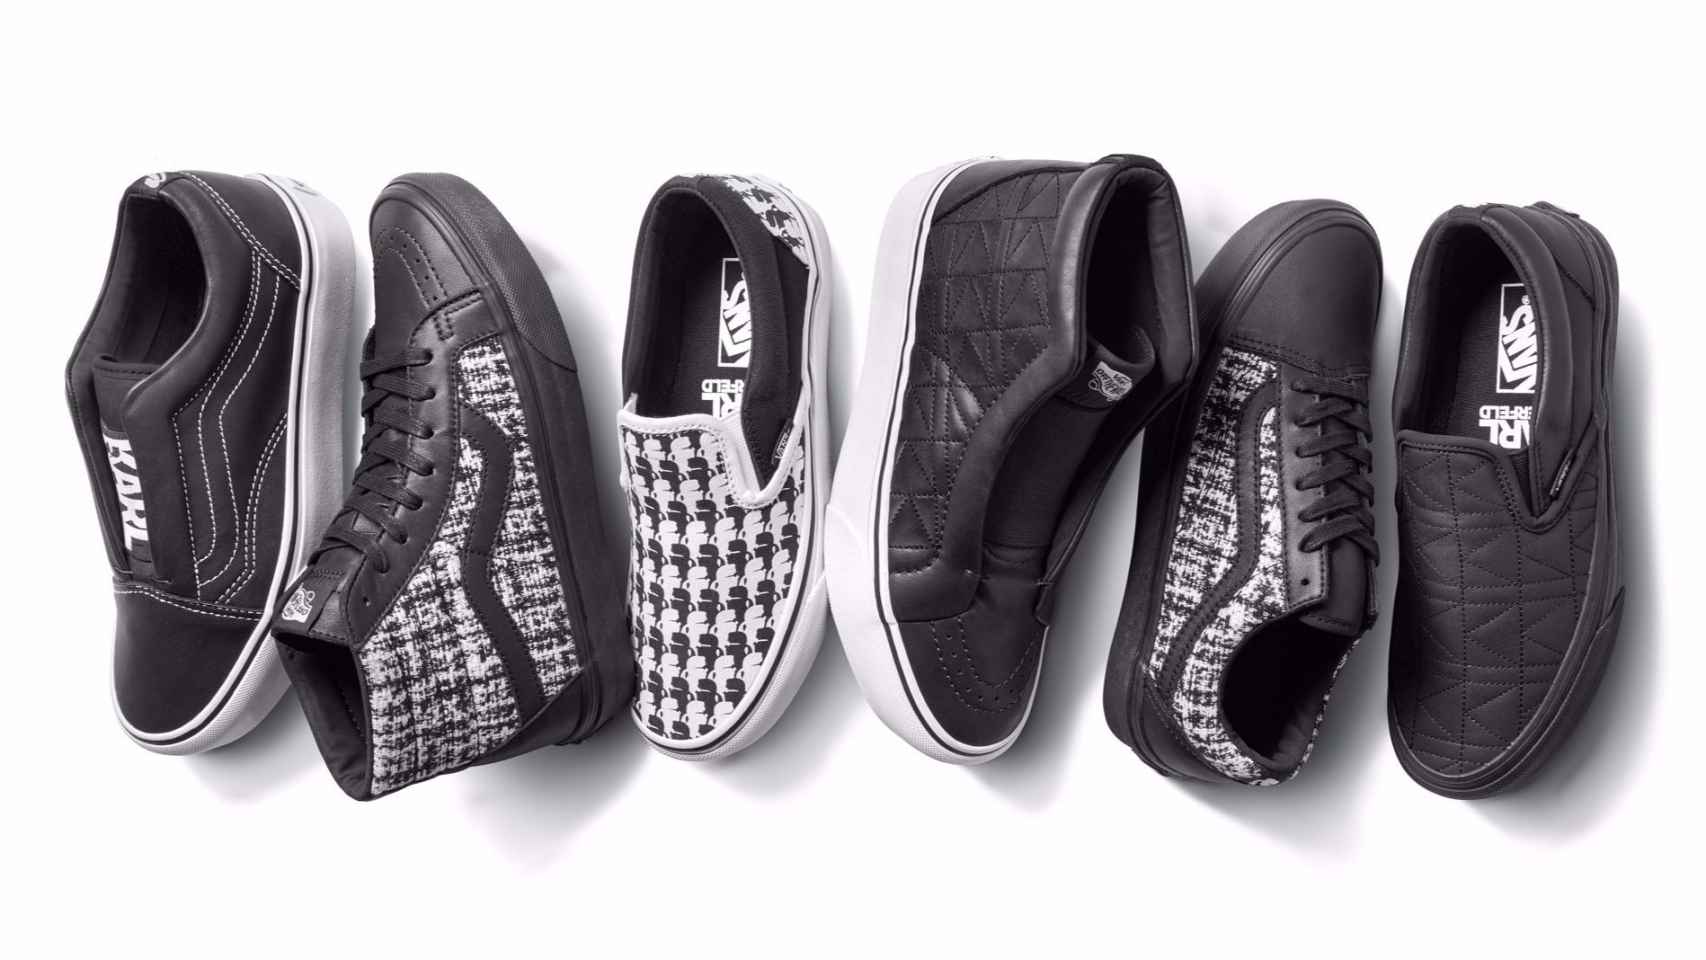 Las zapatillas de Vans y Karl Lagerfeld todas en blanco y negro. | Foto: Vans.